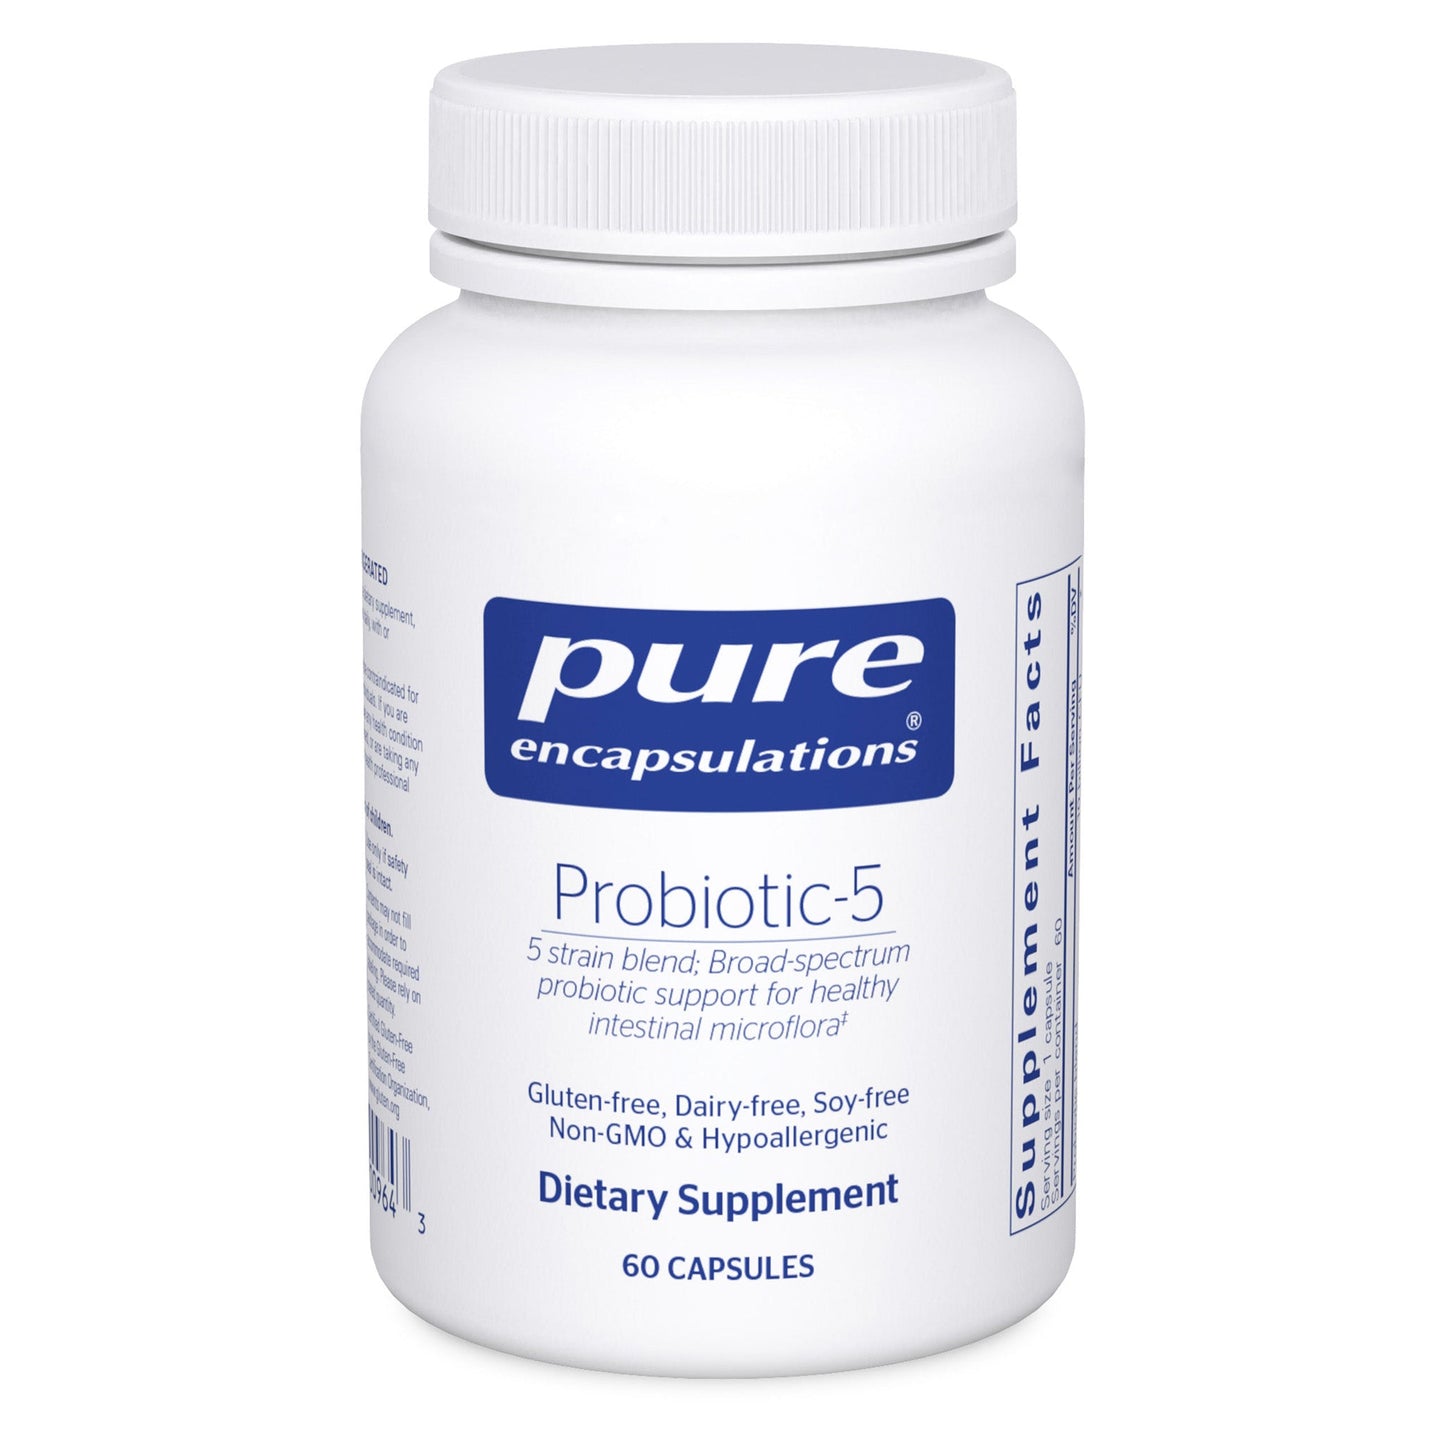 Probiotic 5